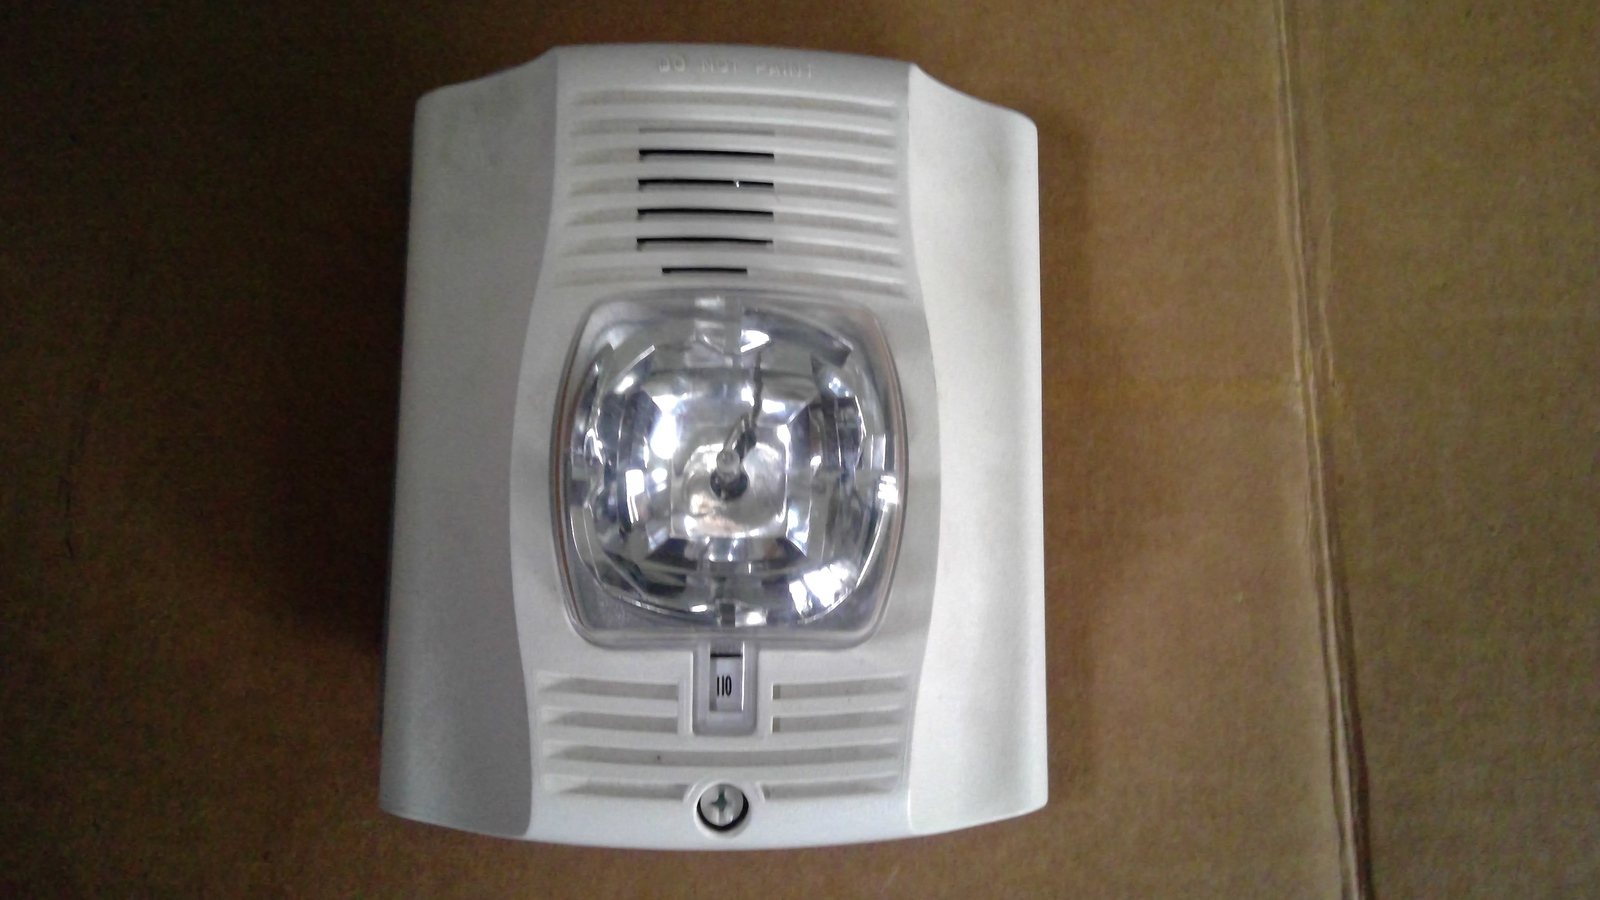 Primary image for System Sensor P2W-P Horn/Strobe Fire Alarm Equipment white